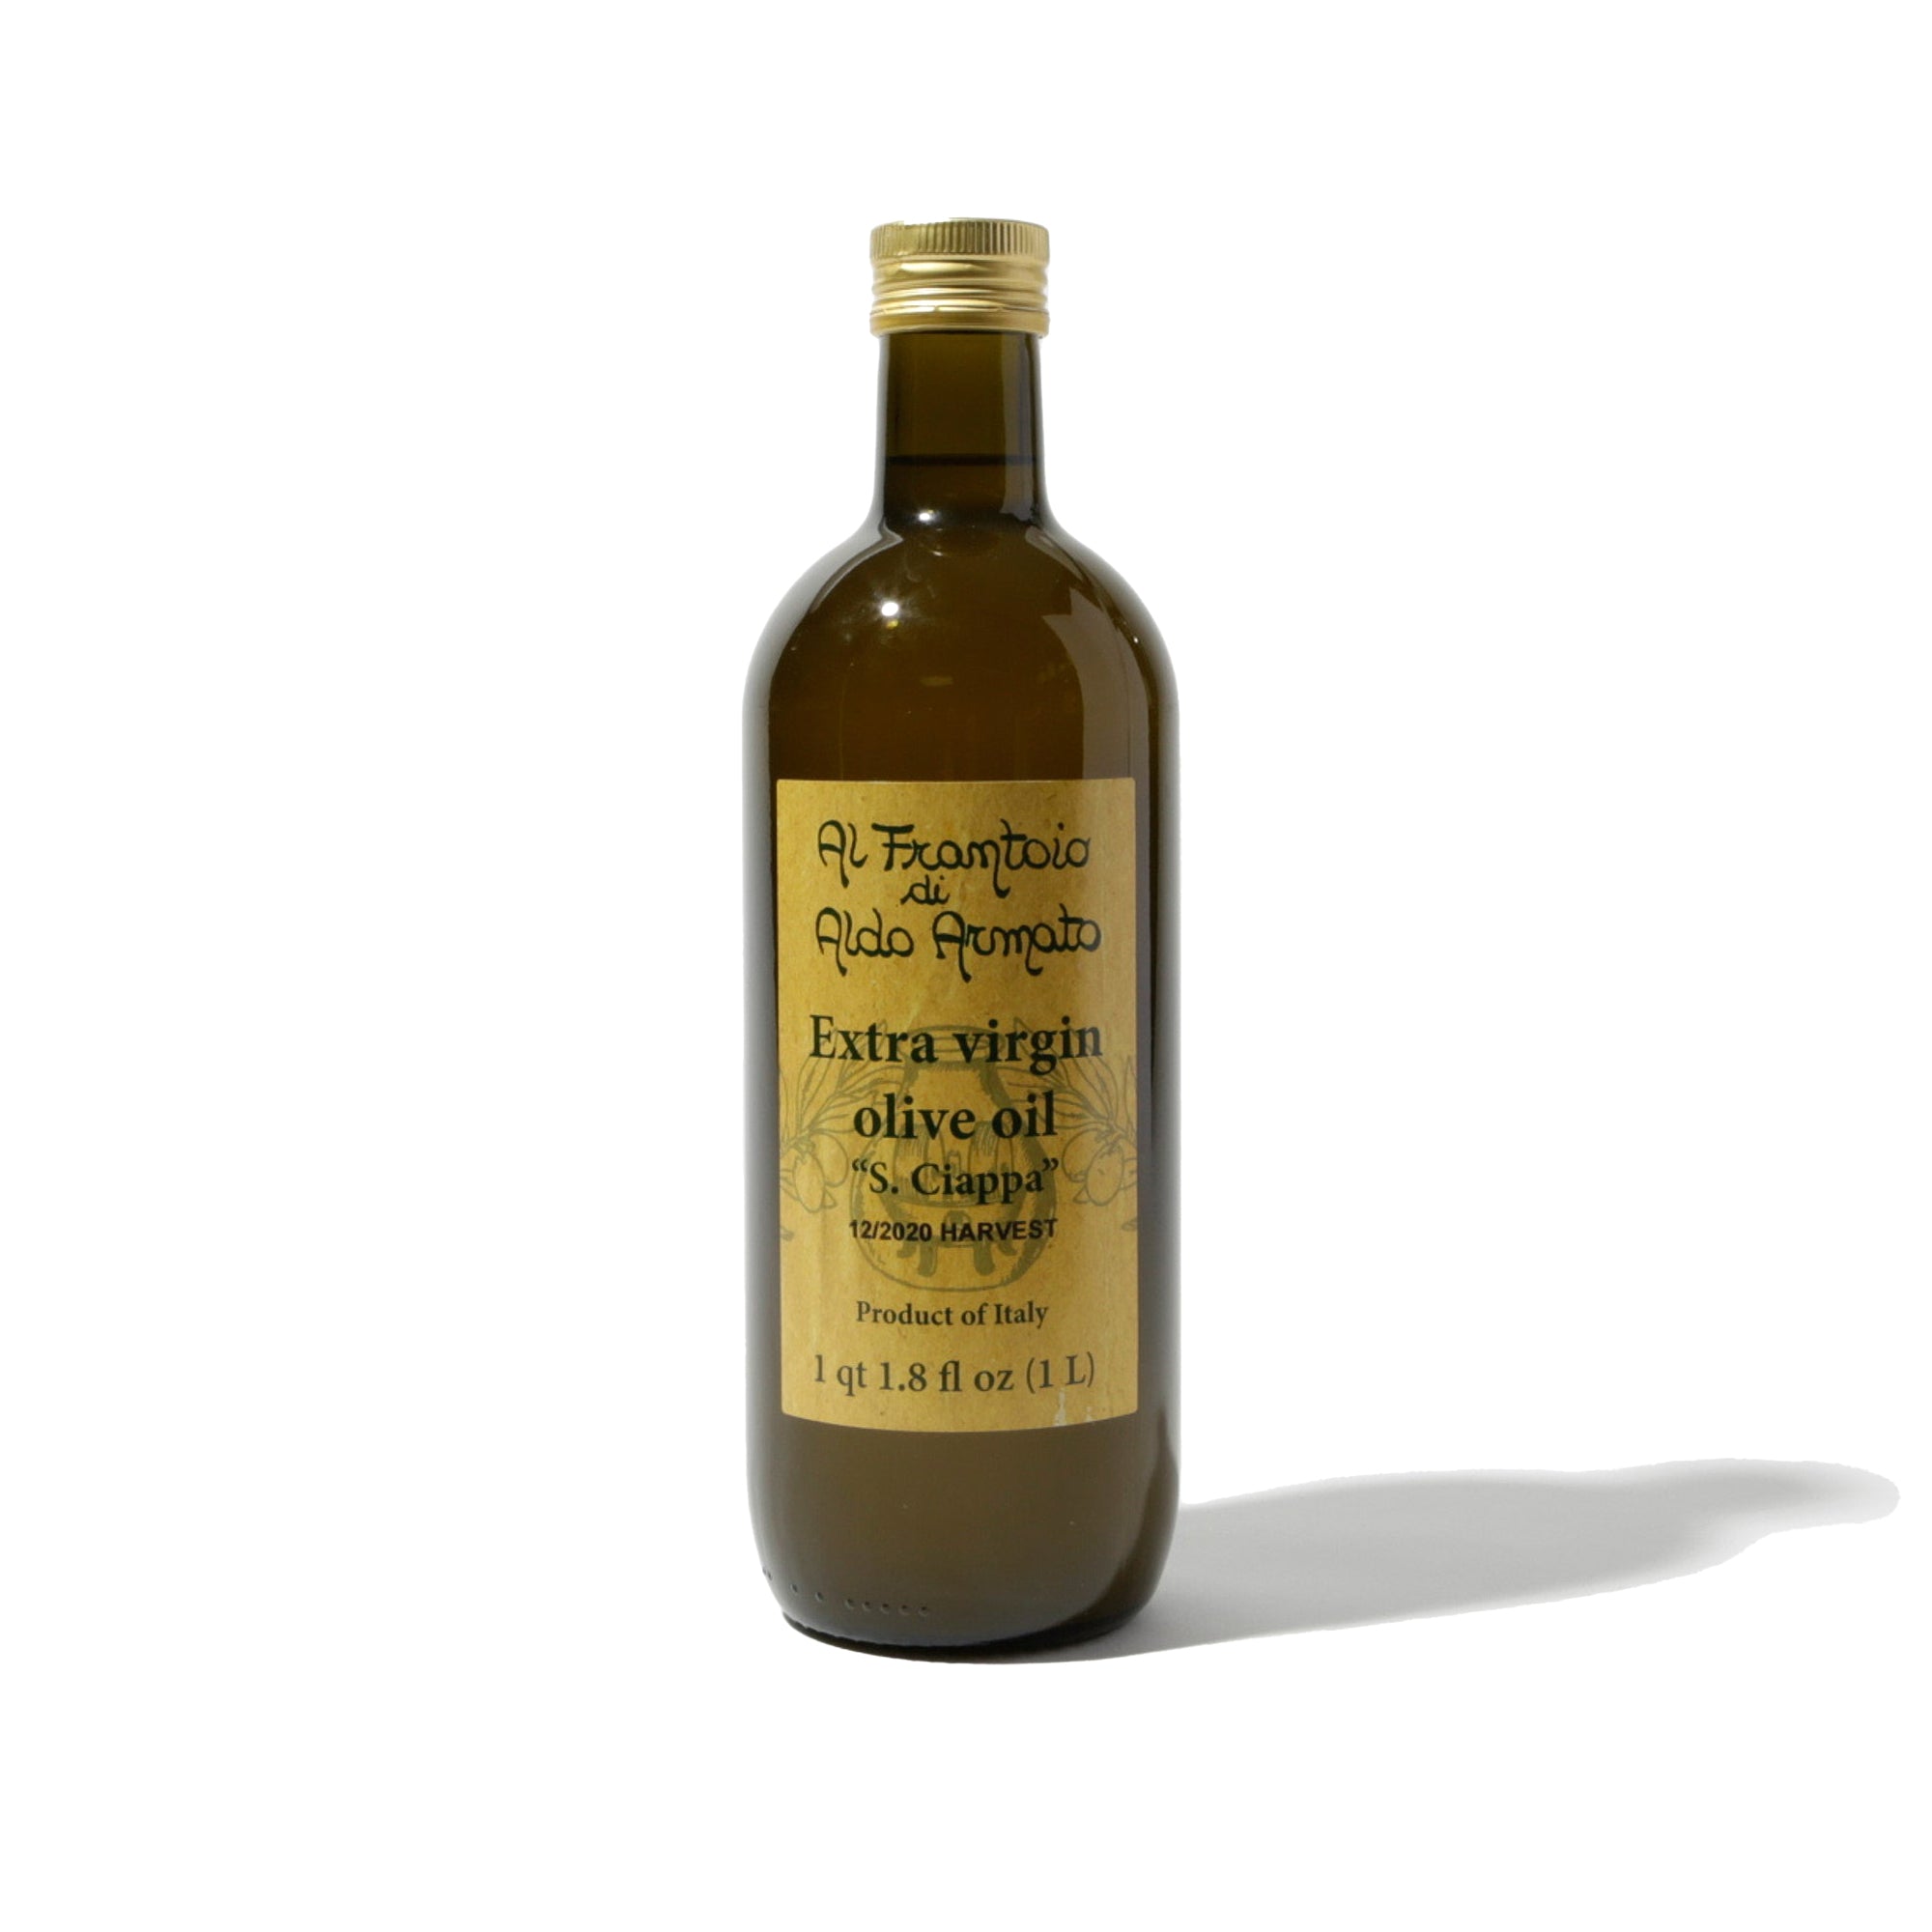 S. Ciappa Olive Oil, 2021 Armato